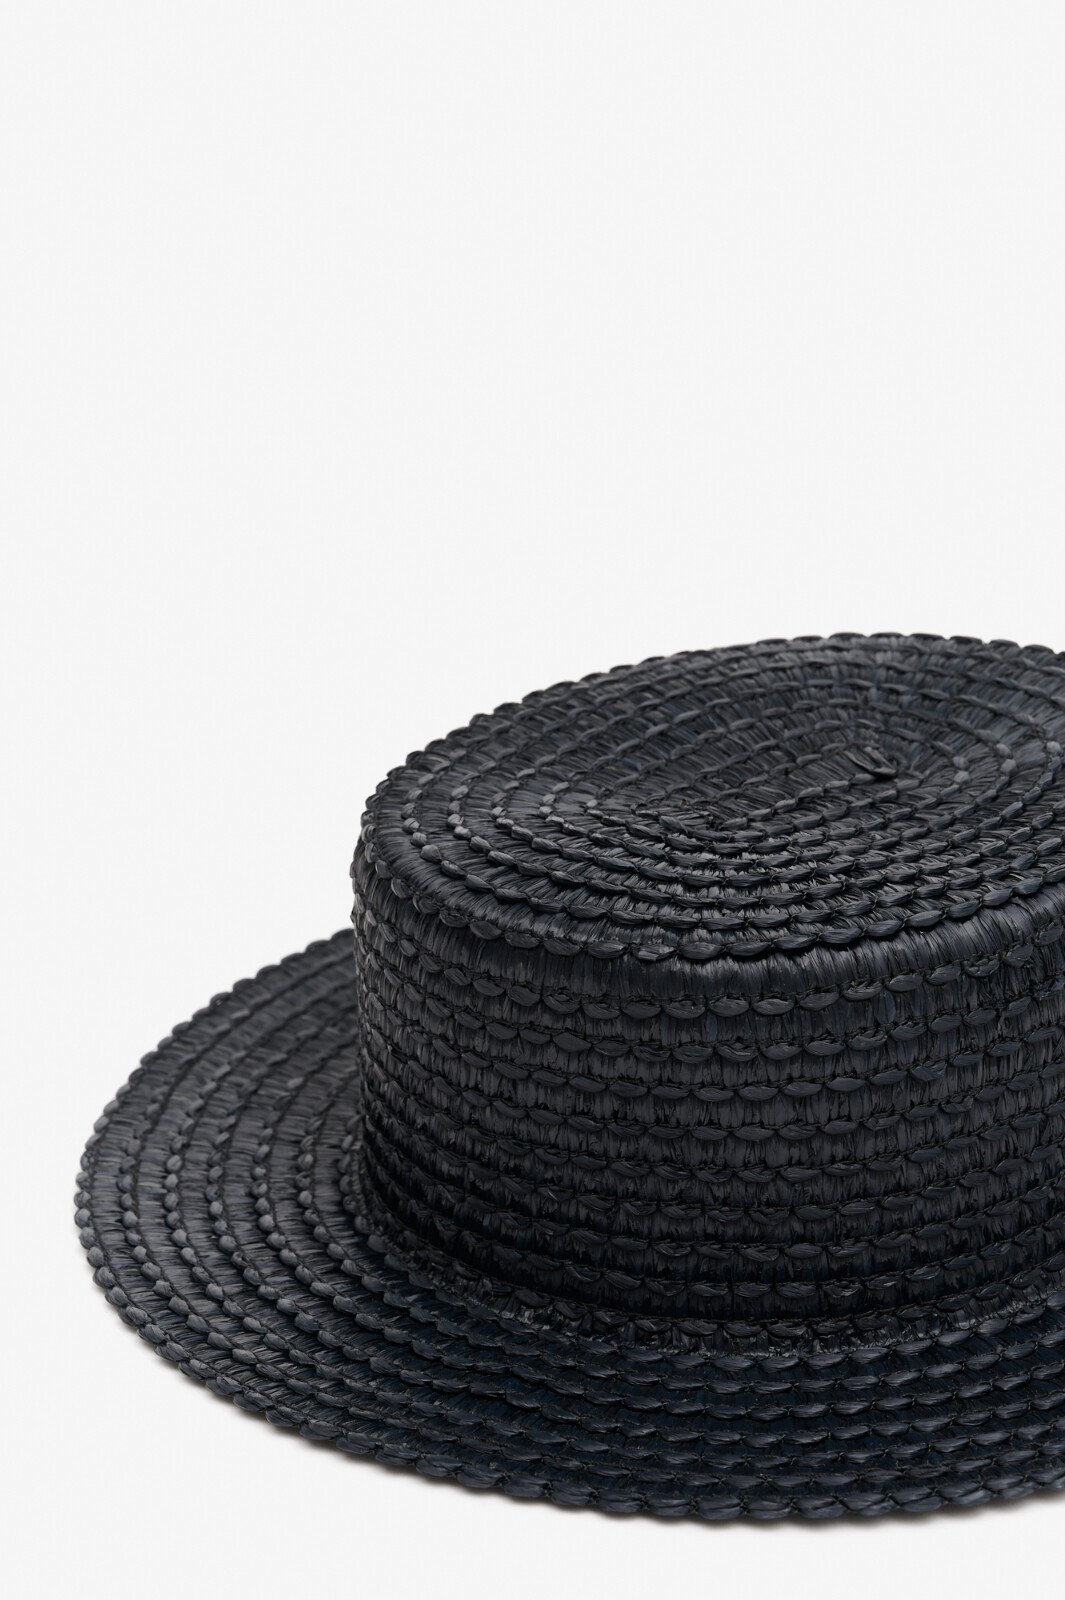 Шляпа image-hover 1